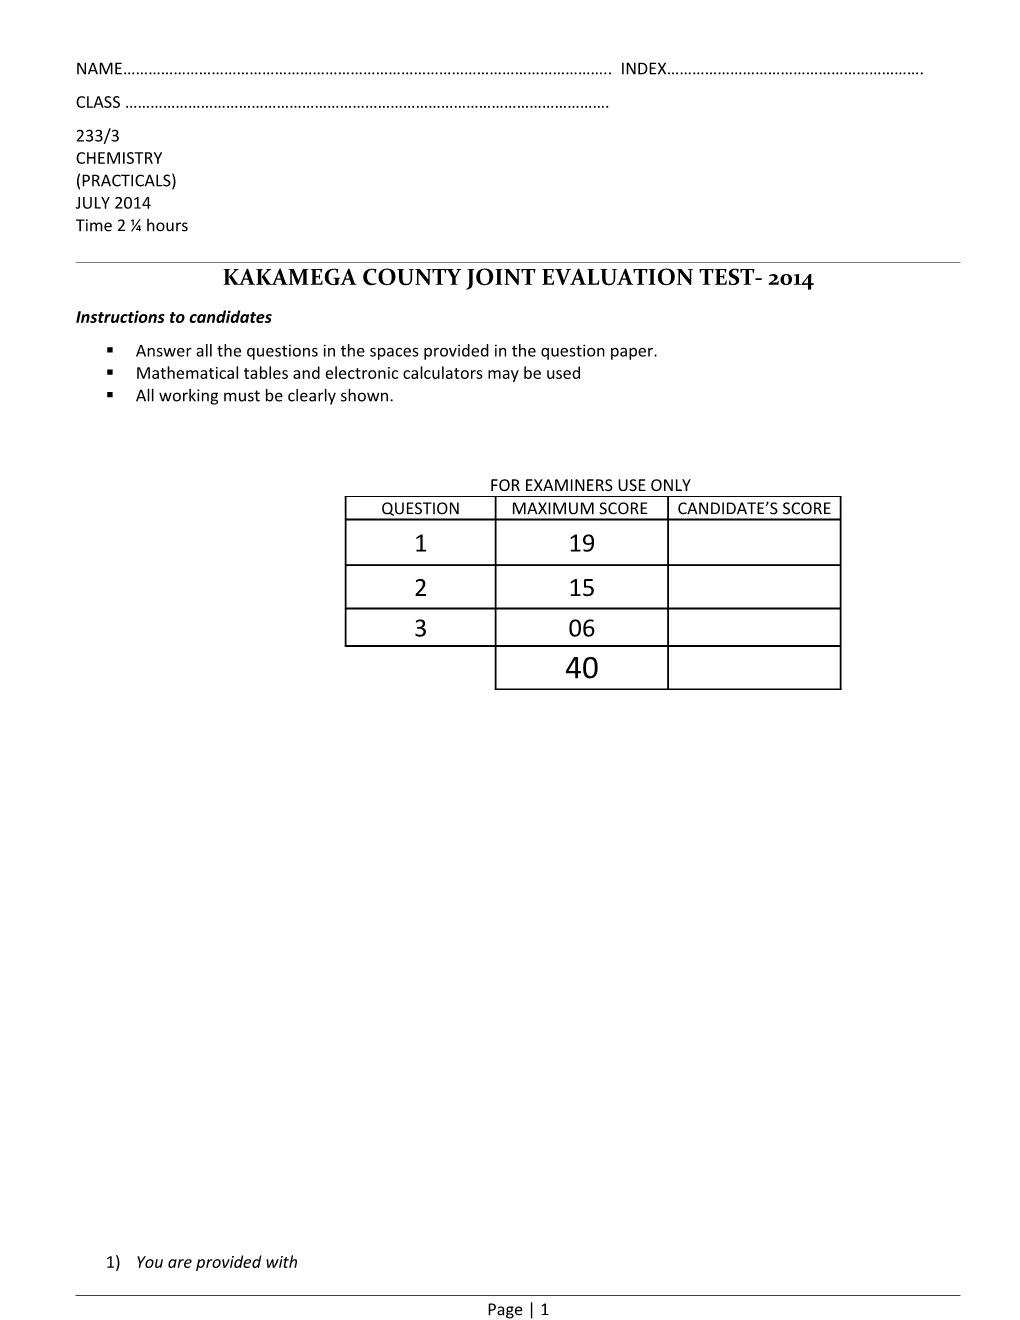 Kakamega County Joint Evaluation Test- 2014